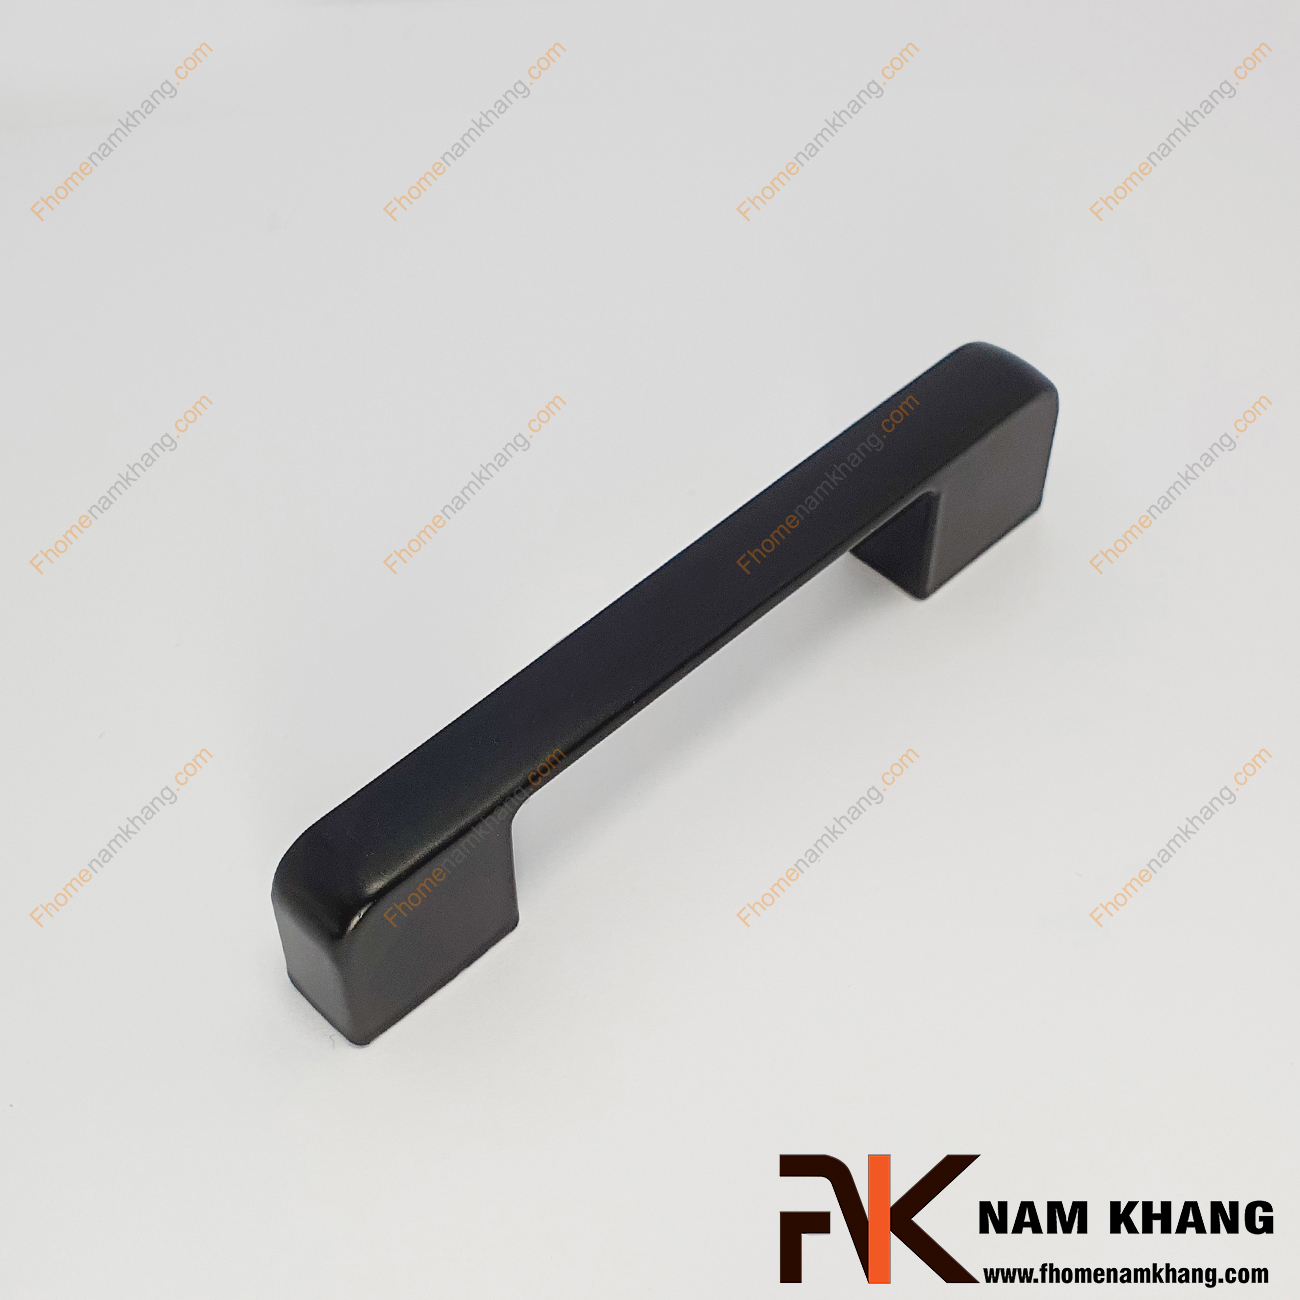 Tay nắm tủ màu đen dạng thanh bo tròn NK143L-DM được thiết kế dựa trên hợp kim chất lượng khuôn dạng vuông tạo cảm giác cầm nắm vô cùng chắc chắn và thao tác thực hiện cũng vô cùng dễ dàng.